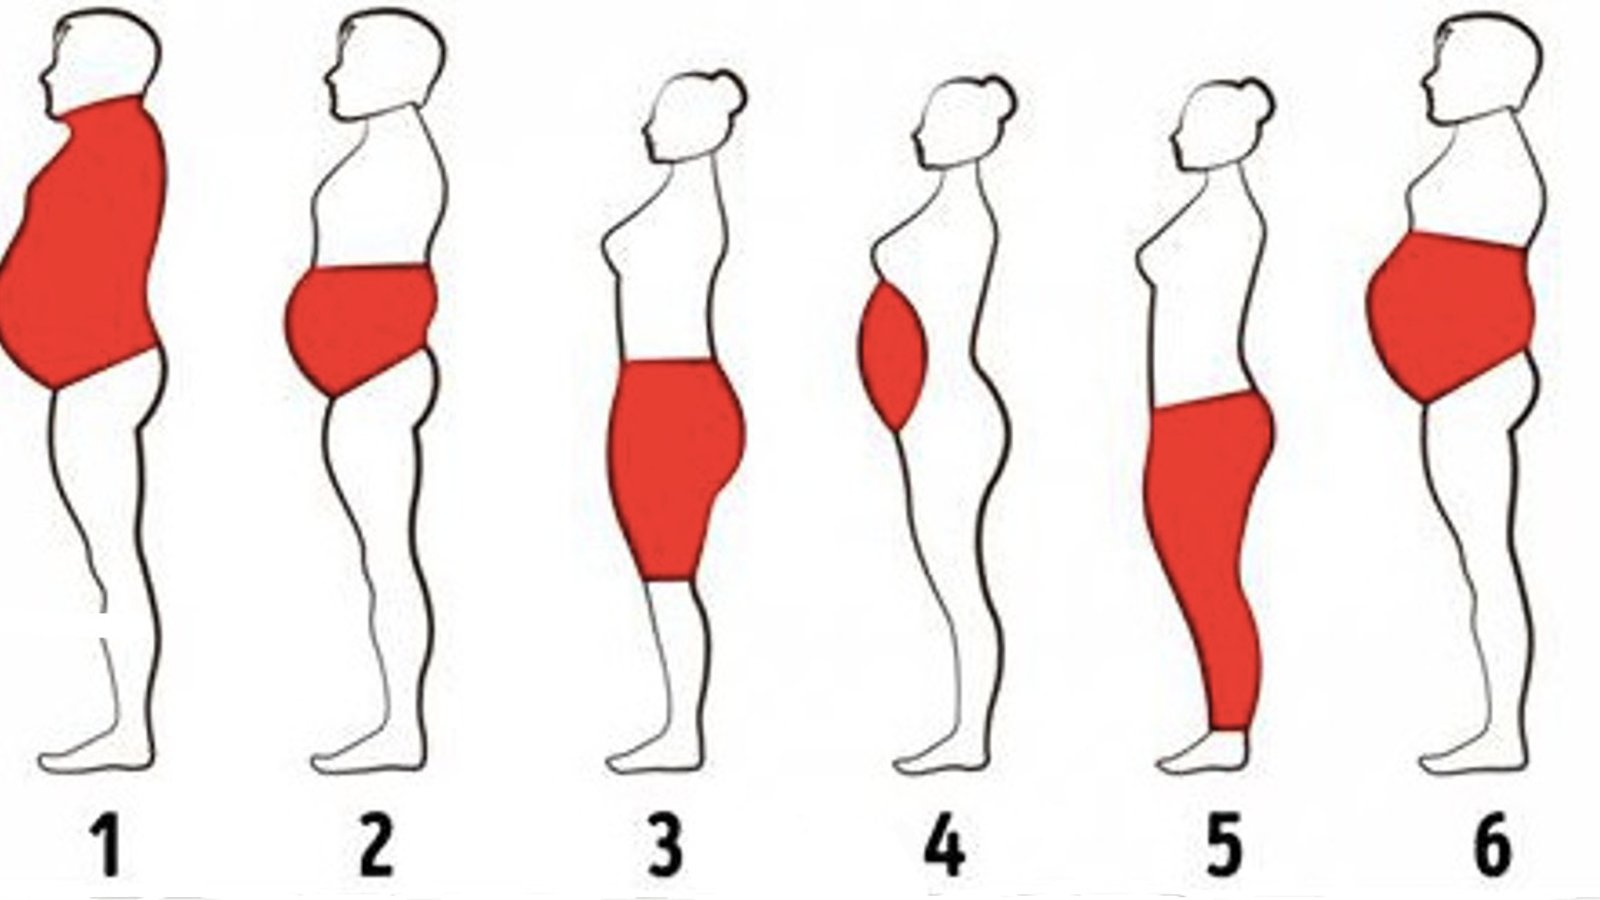 Il existe 6 types de graisses corporelles. Et voici comment s'en débarrasser